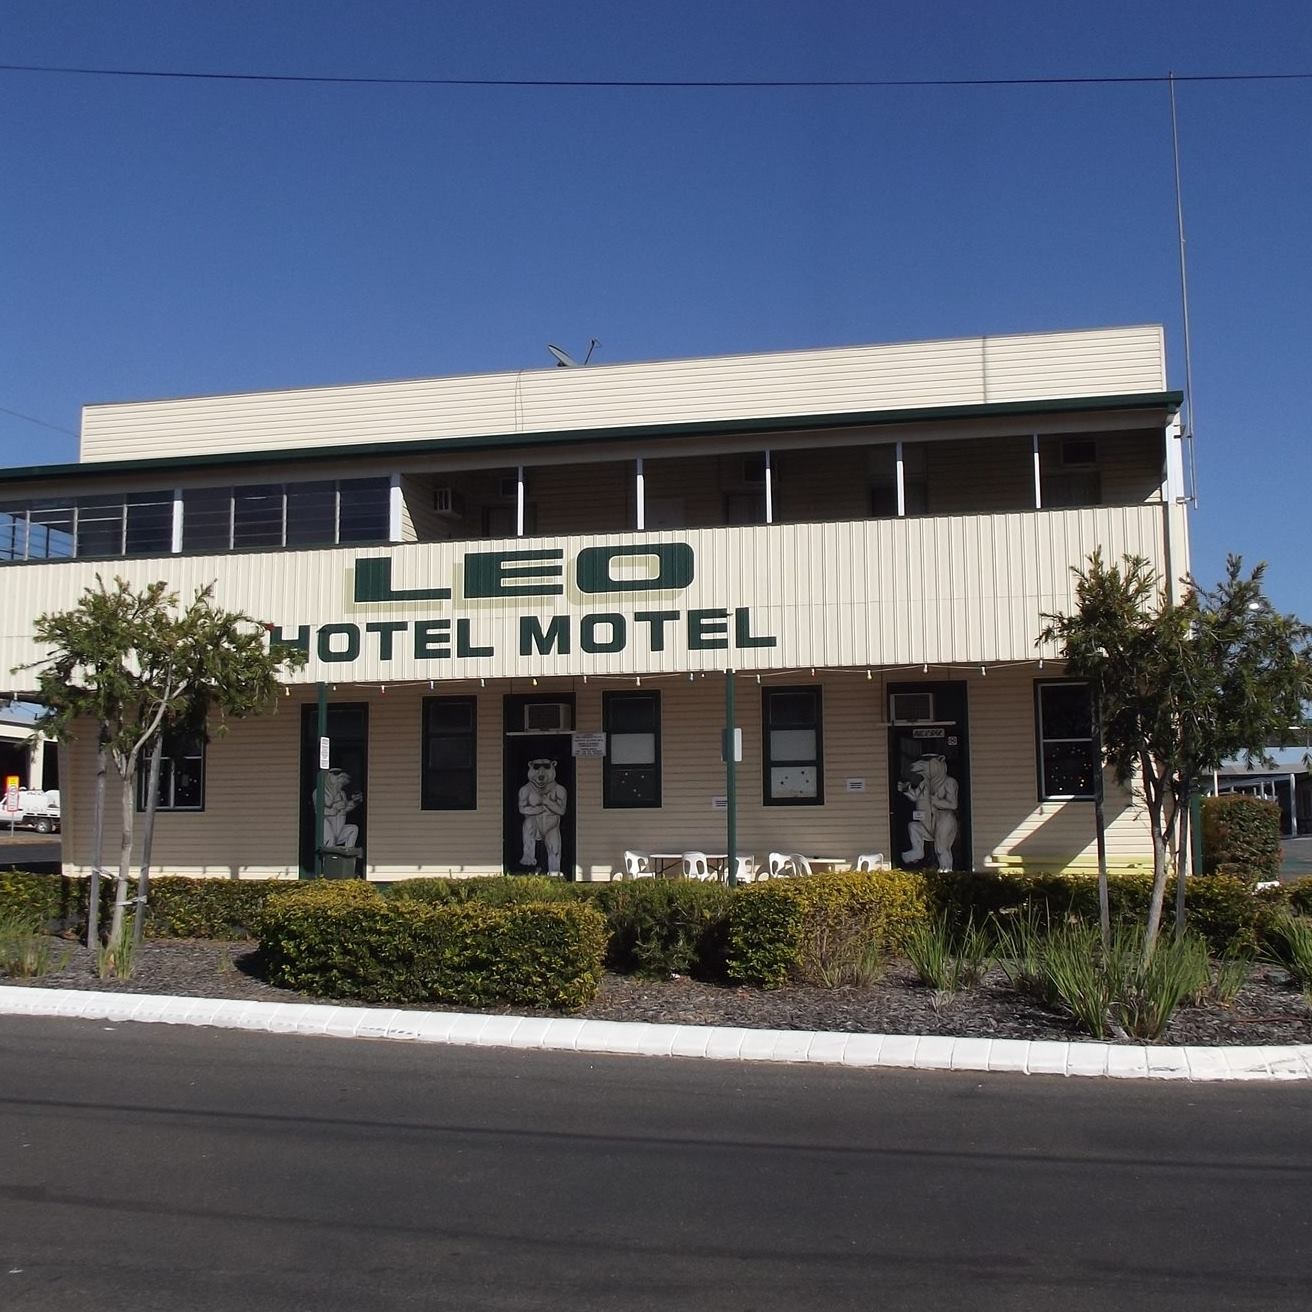 Leo Hotel Motel